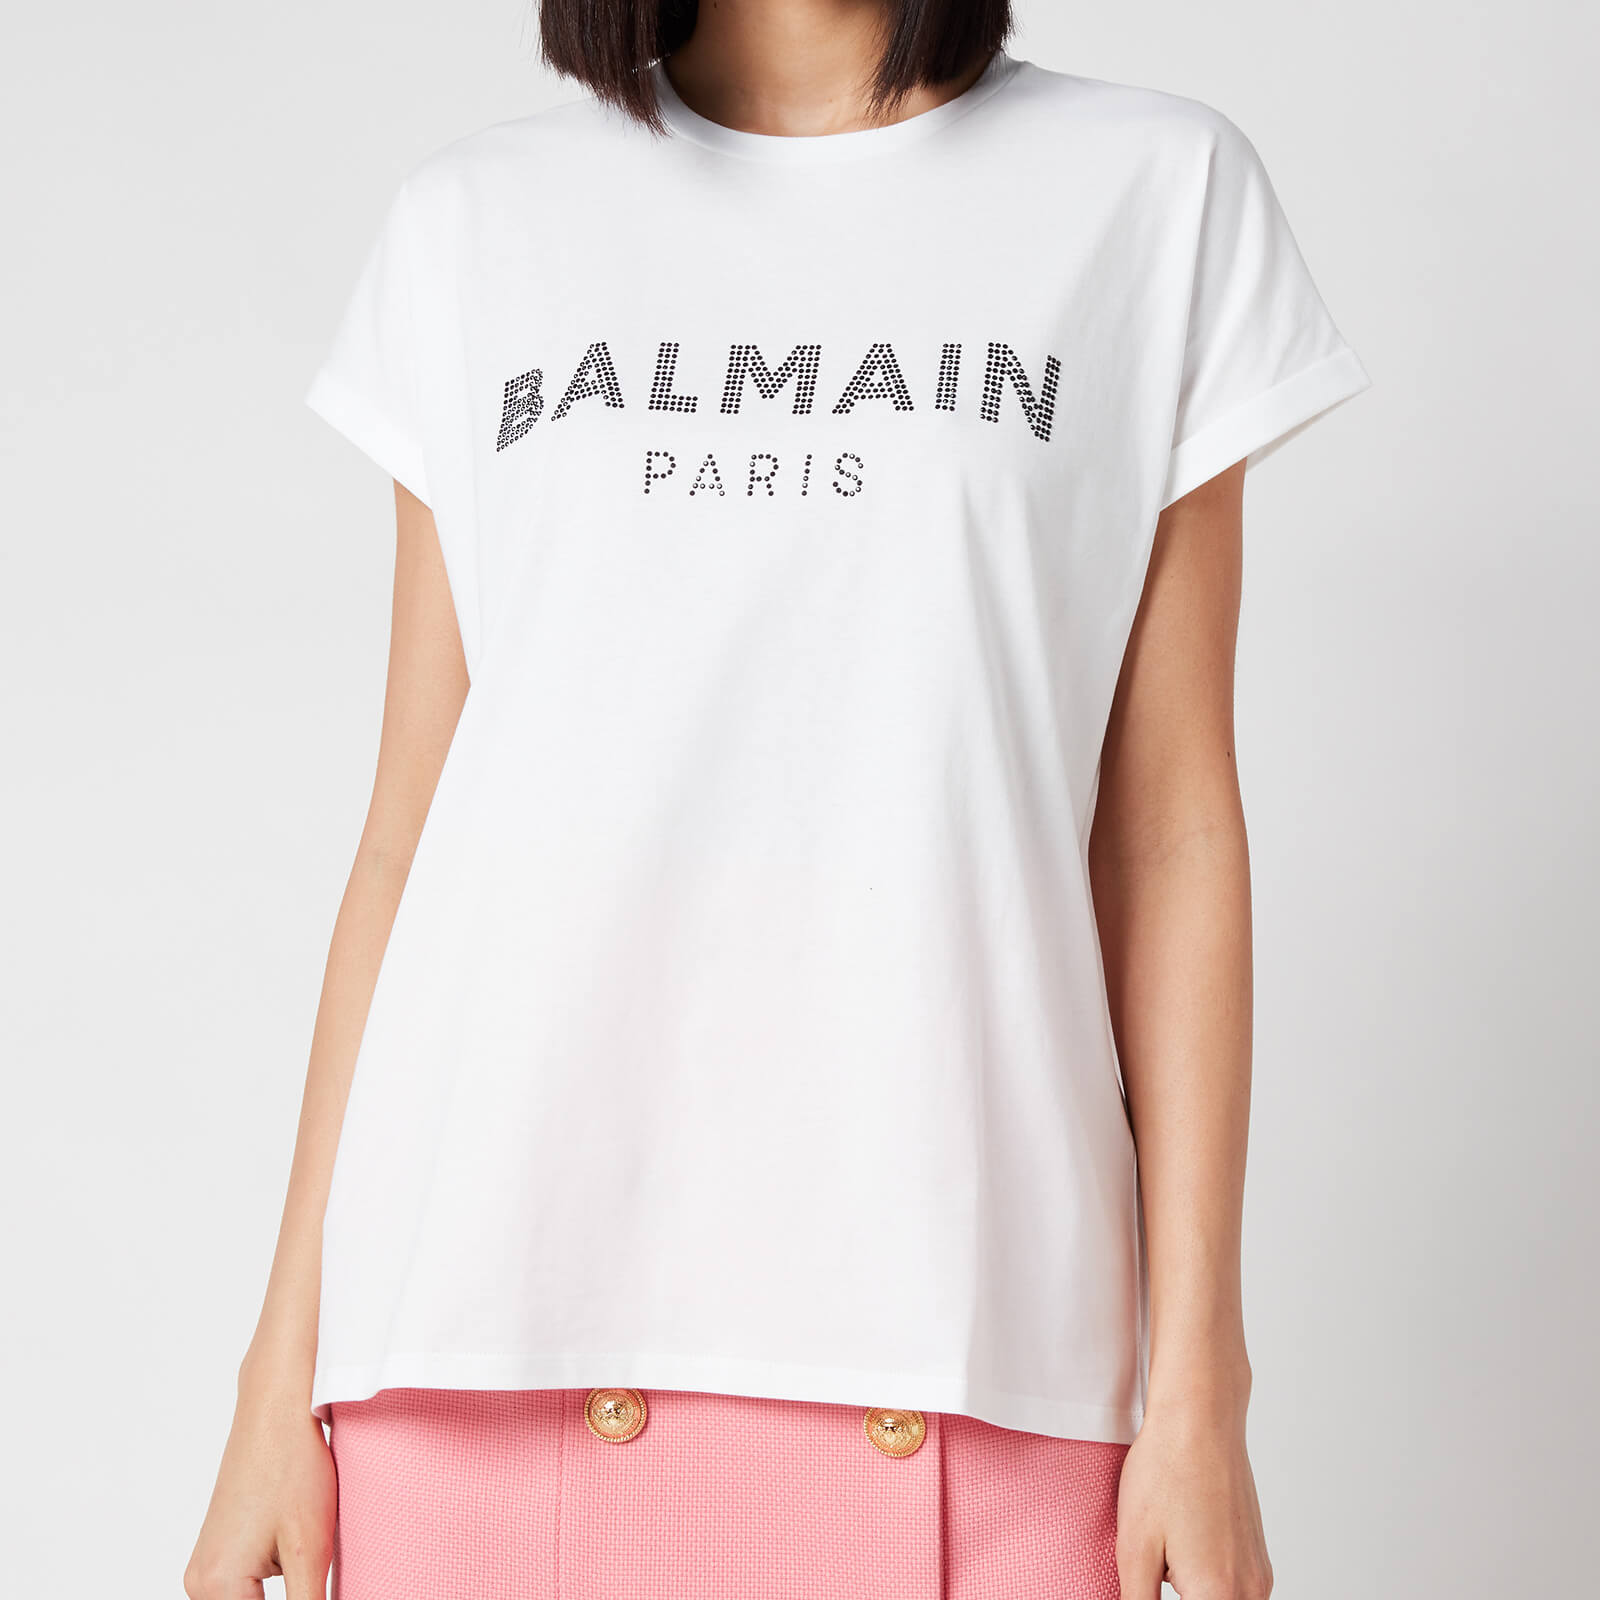 Balmain Women's Strass Logo T-Shirt - Blanc/Noir - M